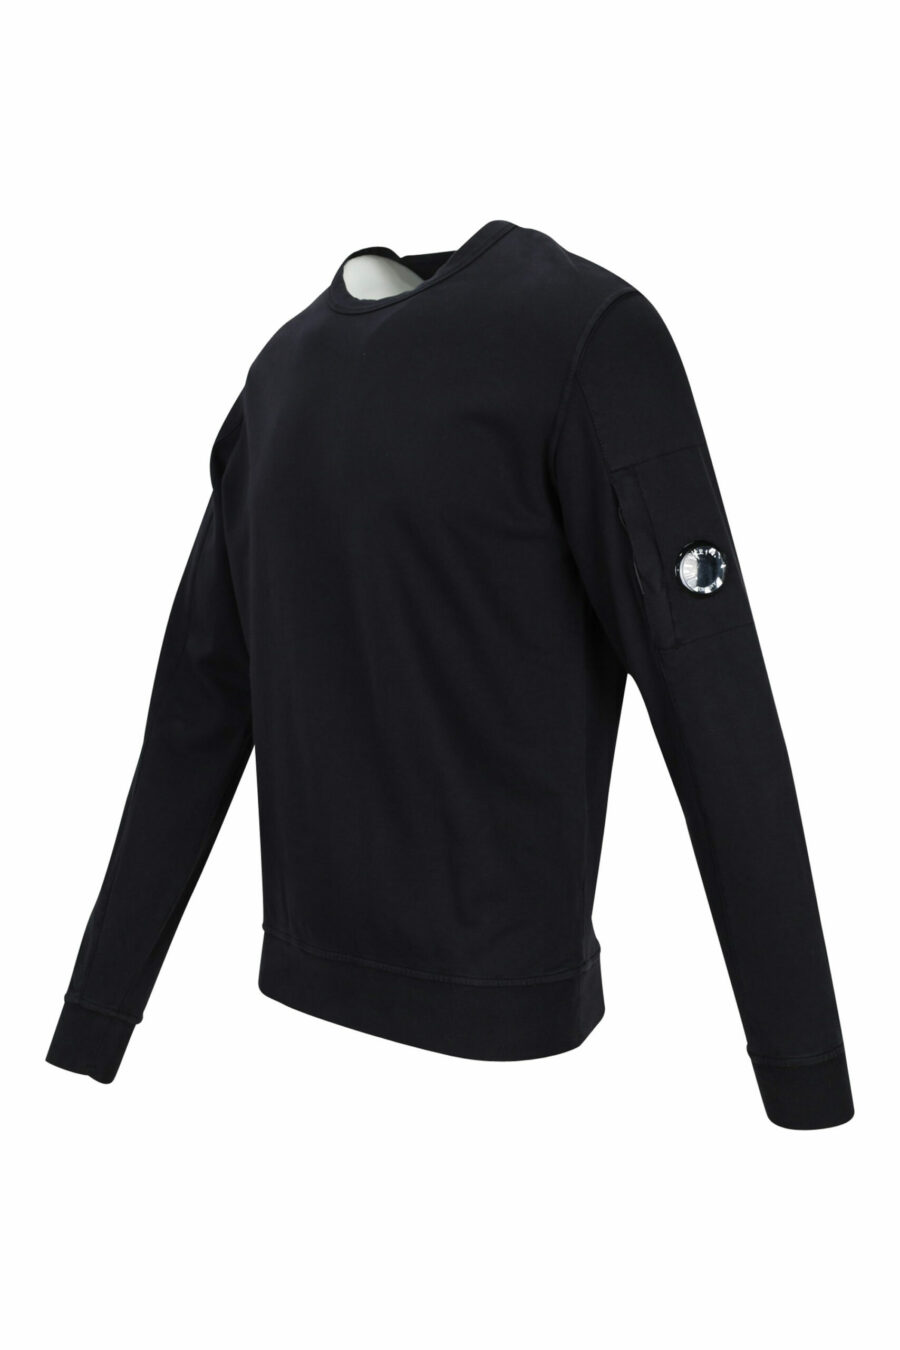 Schwarzes Sweatshirt mit seitlicher Linse minilogue - 7620943592191 1 skaliert